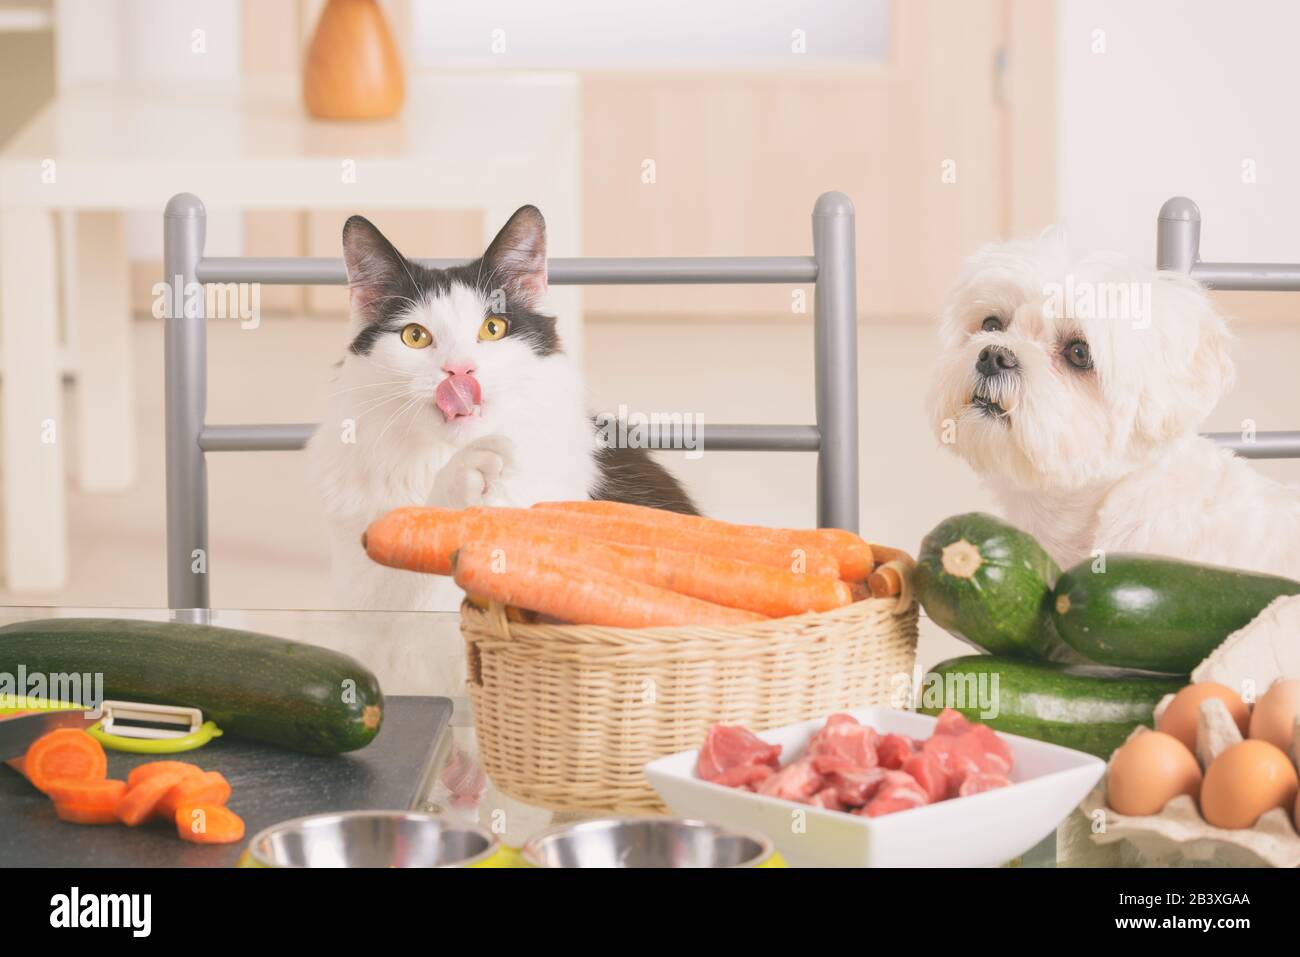 whiskas cat food tins pets at home